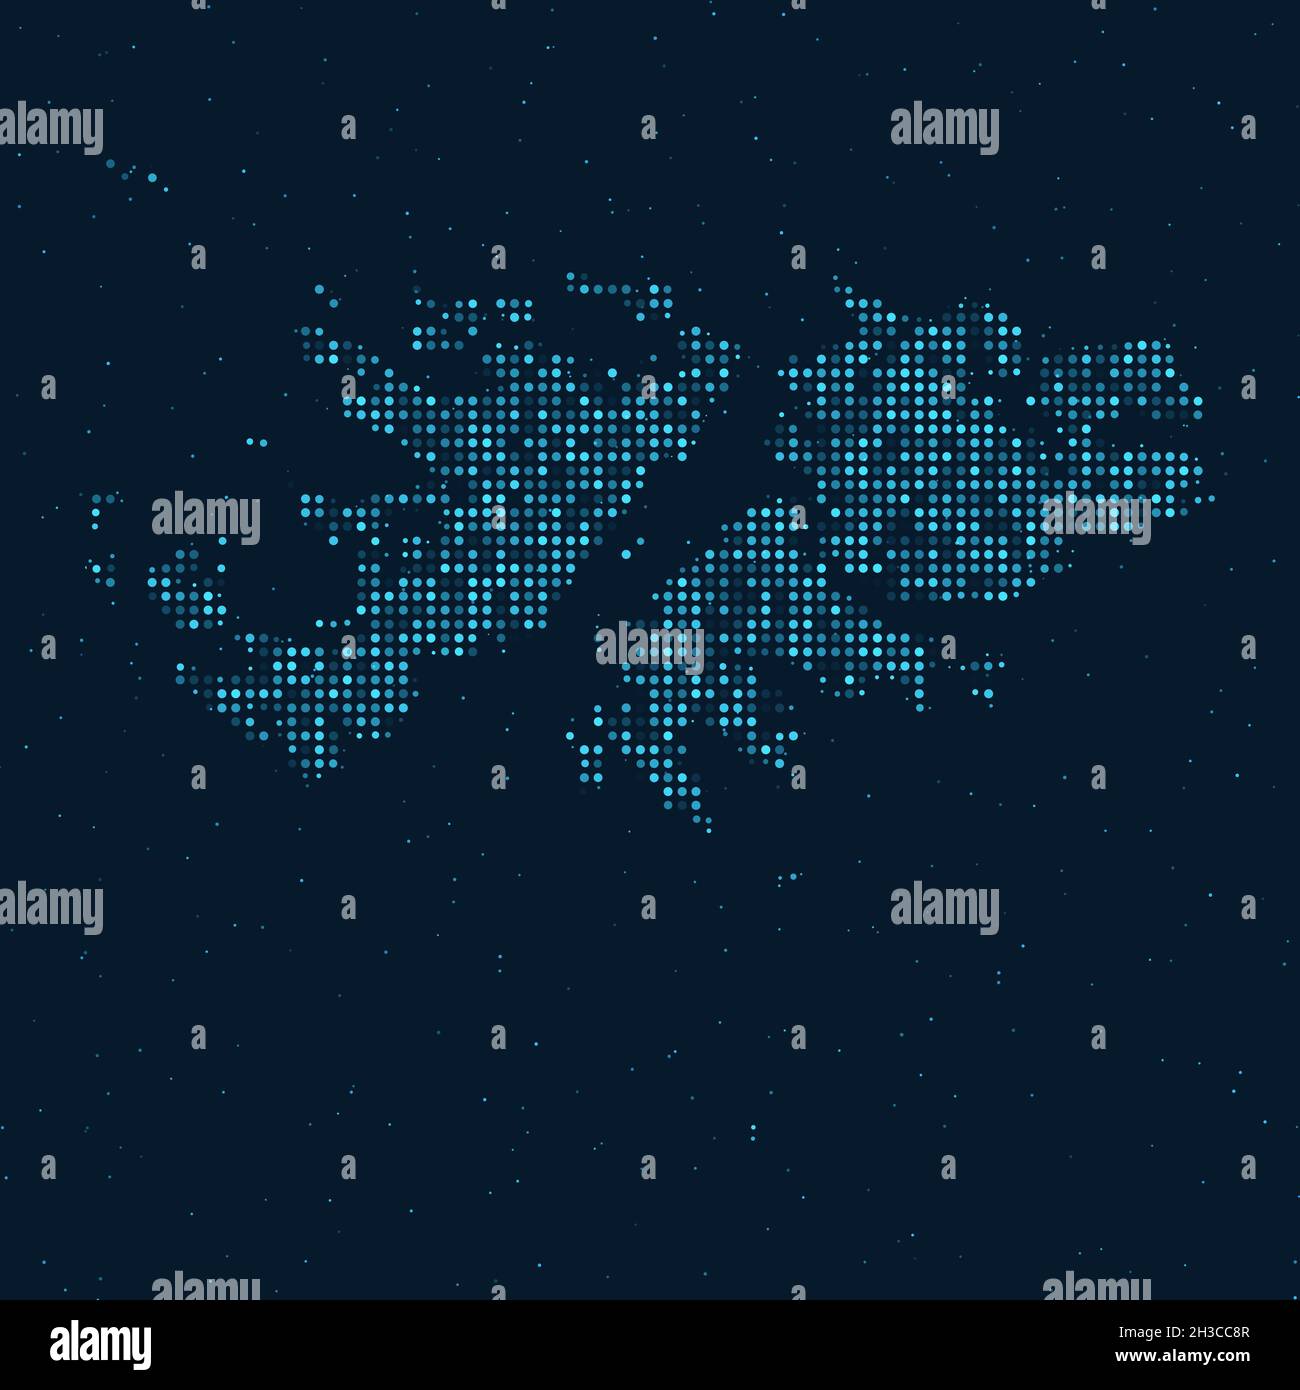 Abstrakt gepunkteter Halbton mit Sterneneffekt auf dunkelblauem Hintergrund mit Karte der Falklandinseln (Islas Malvinas). Digital gepunktete Technologie Design sp Stock Vektor